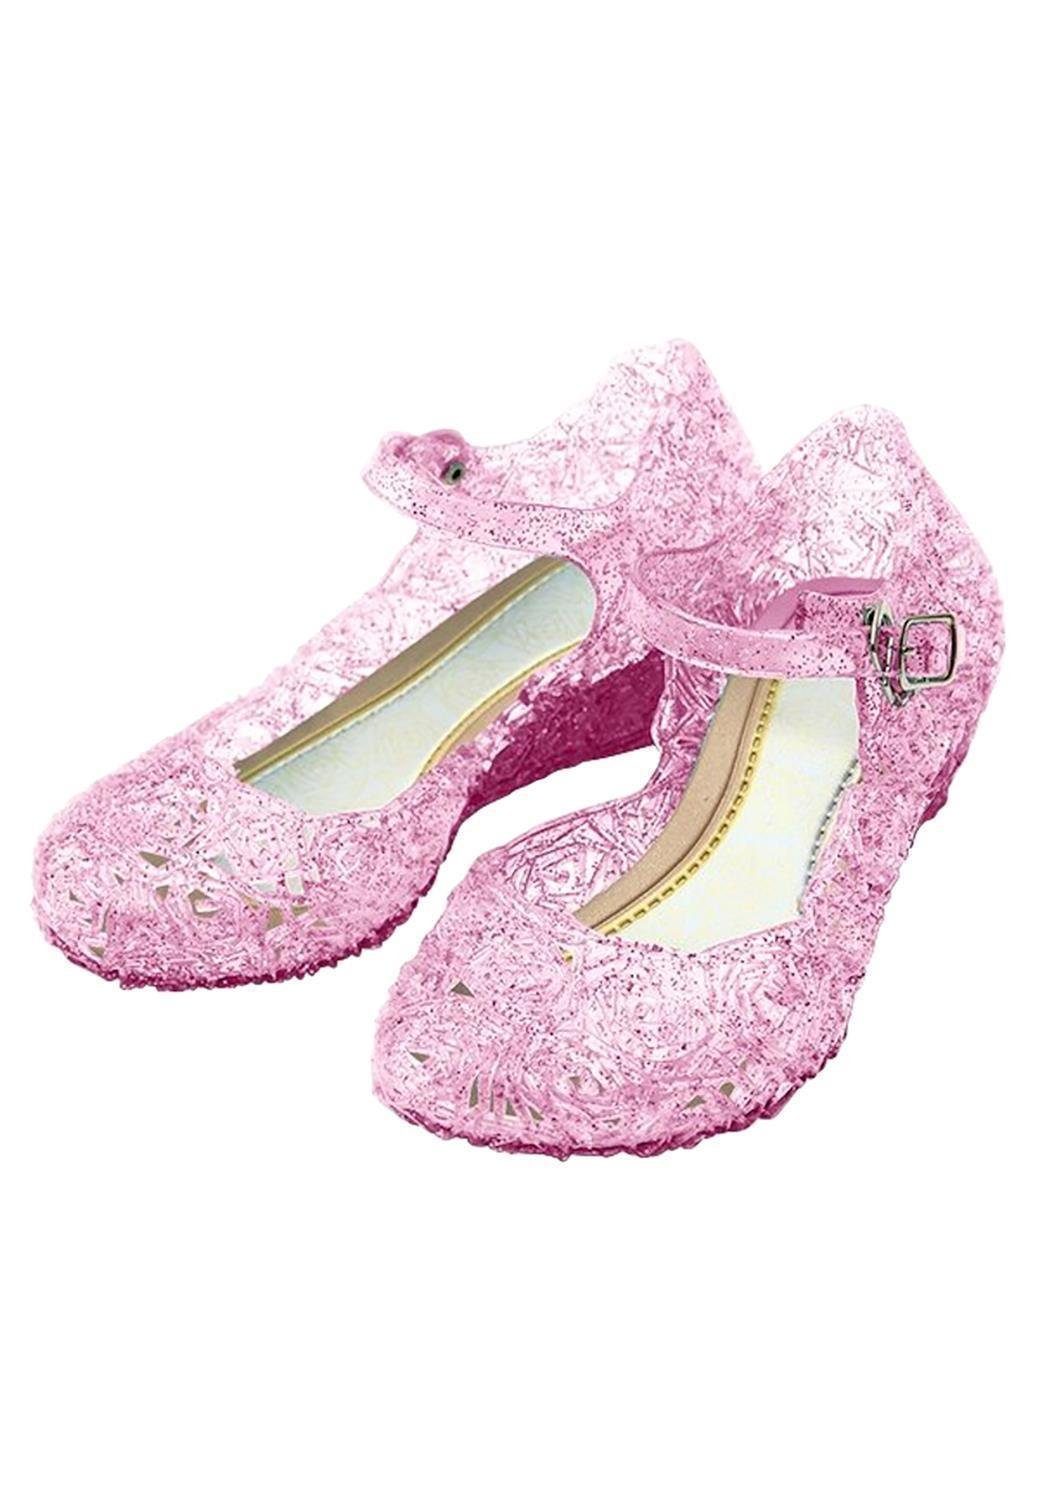 Katara »Prinzessin Kostümzubehör Absatz Schuhe für Kinder« Ballerina Elsa,  Cinderella, Dornröschen, Prinzessin, Mädchen, Fasching Kostüm Karneval  online kaufen | OTTO